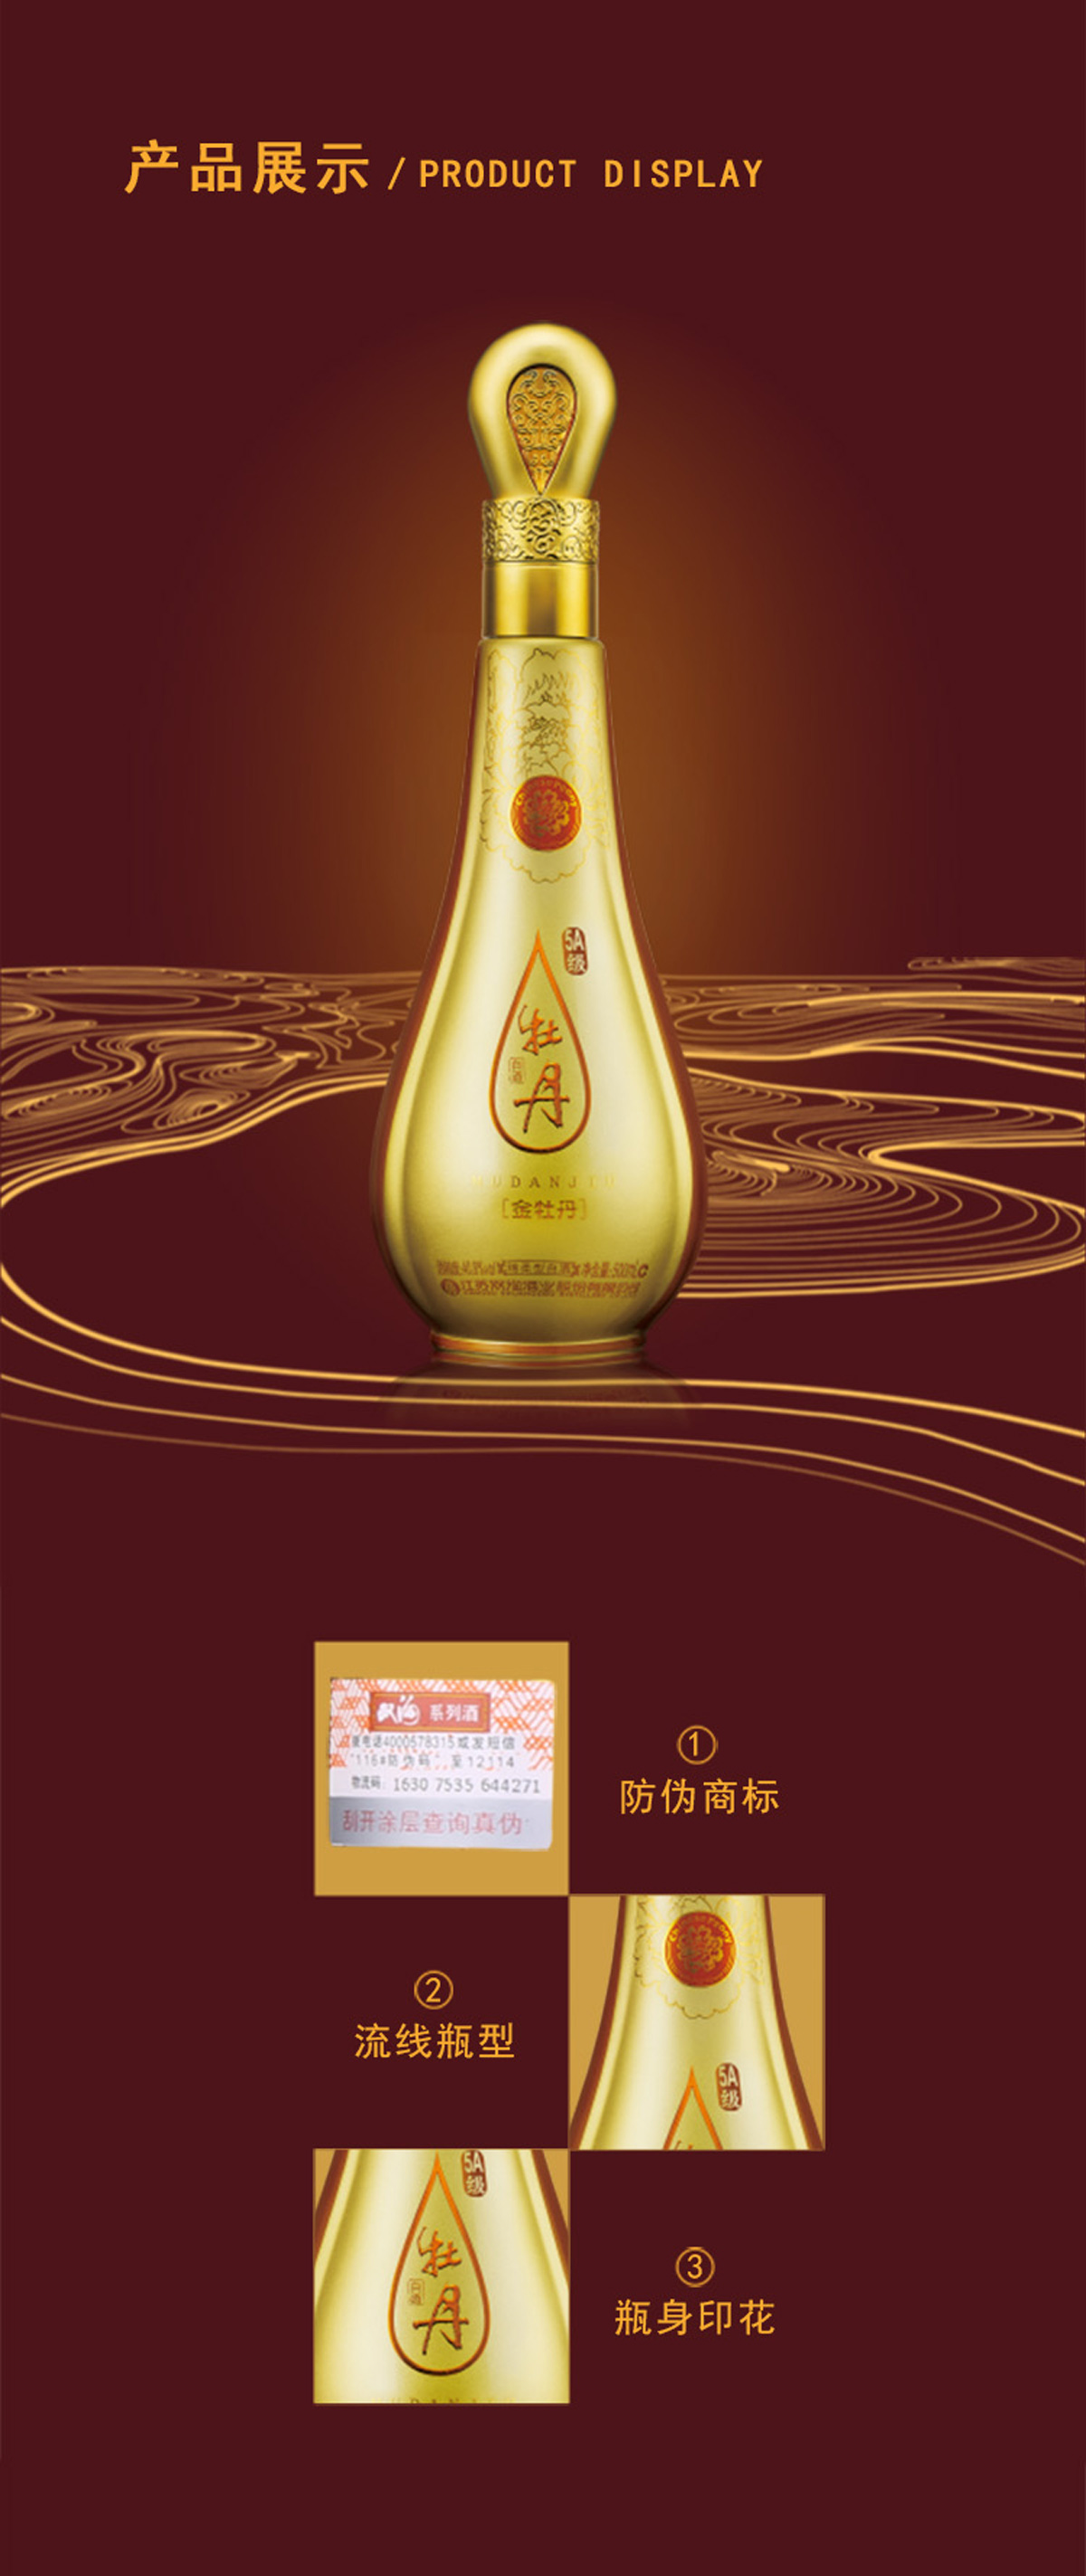 【雙溝新品精裝版】5A級金牡丹40.8度500ml單瓶裝綿柔型白酒(圖2)